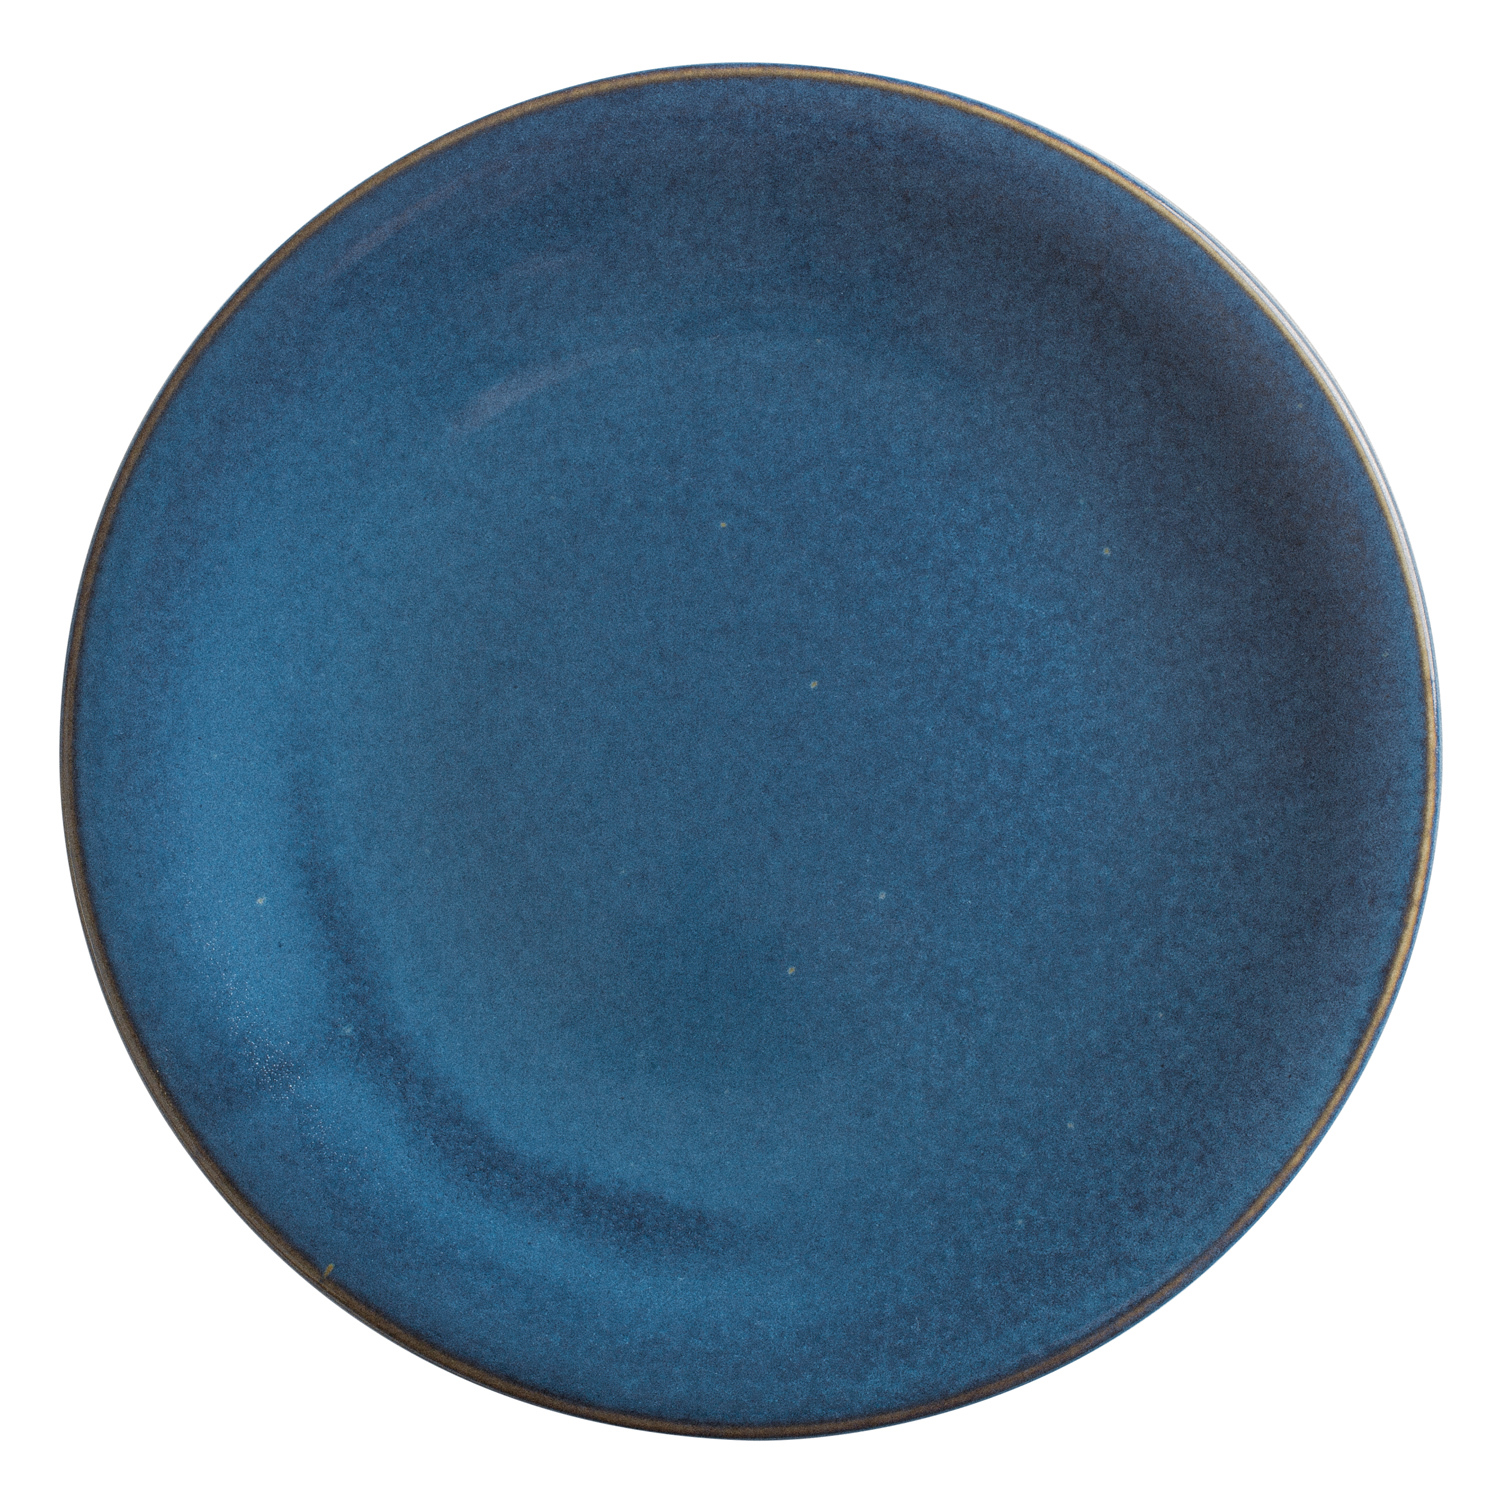 KAHLA Essteller Homestyle atlantic blue 26,5cm 